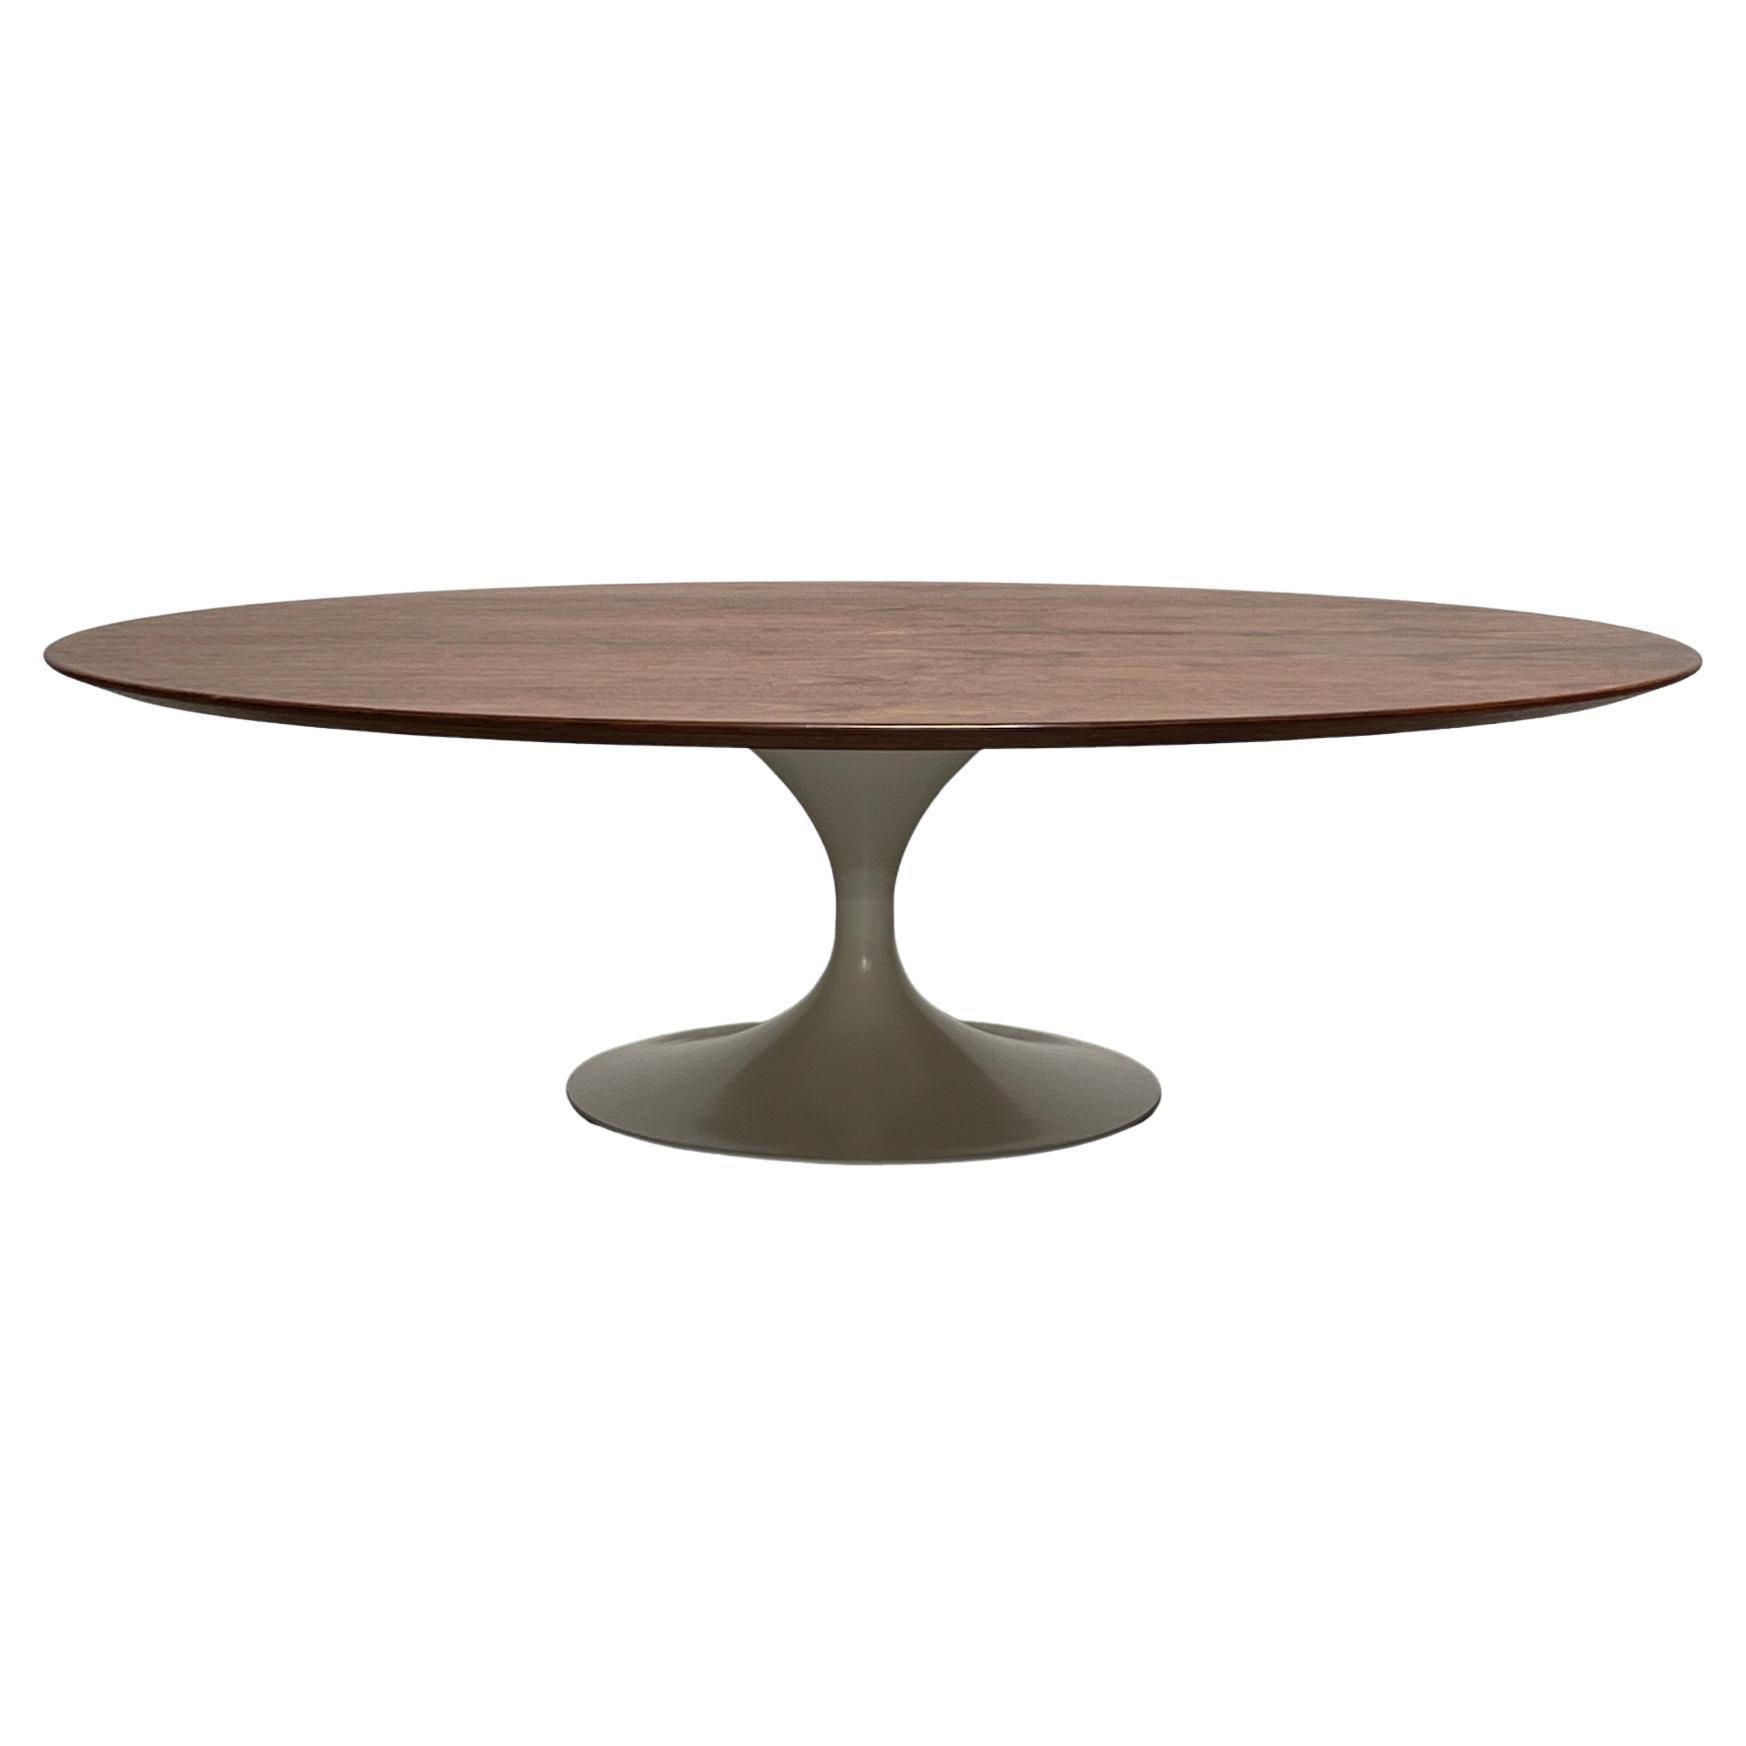 Walnut Top Elliptical Coffee Table by Eero Saarinen for Knoll